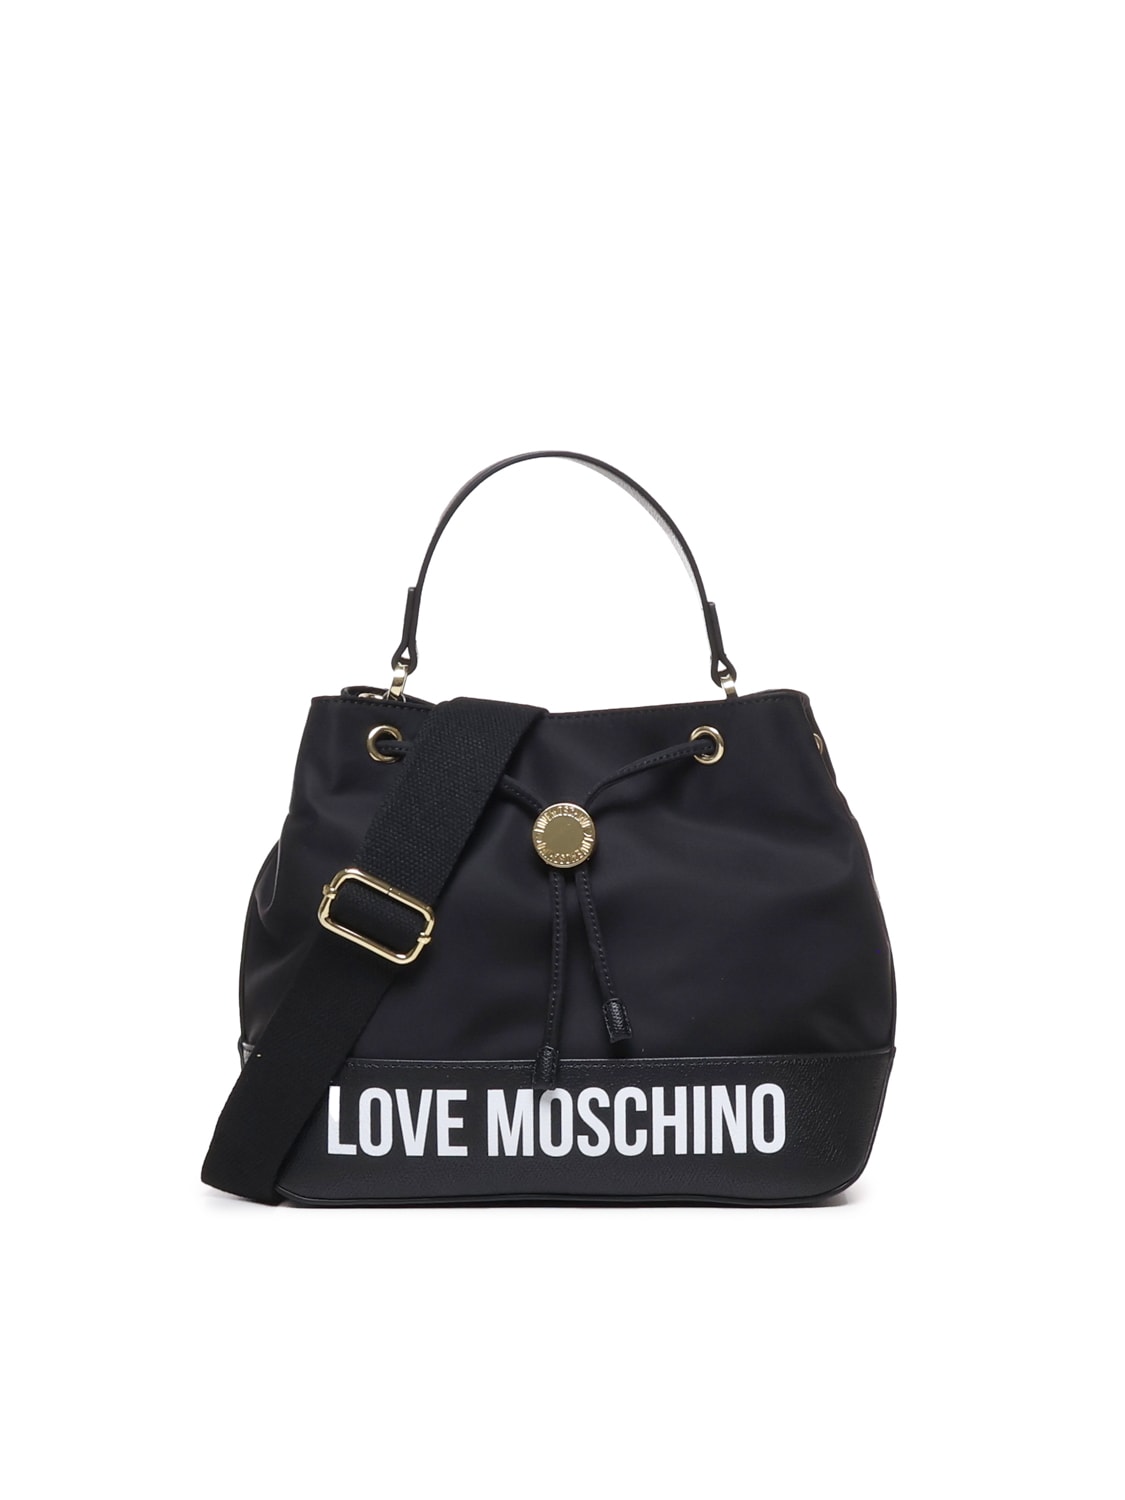 Love Handbag With Shoulder Strap